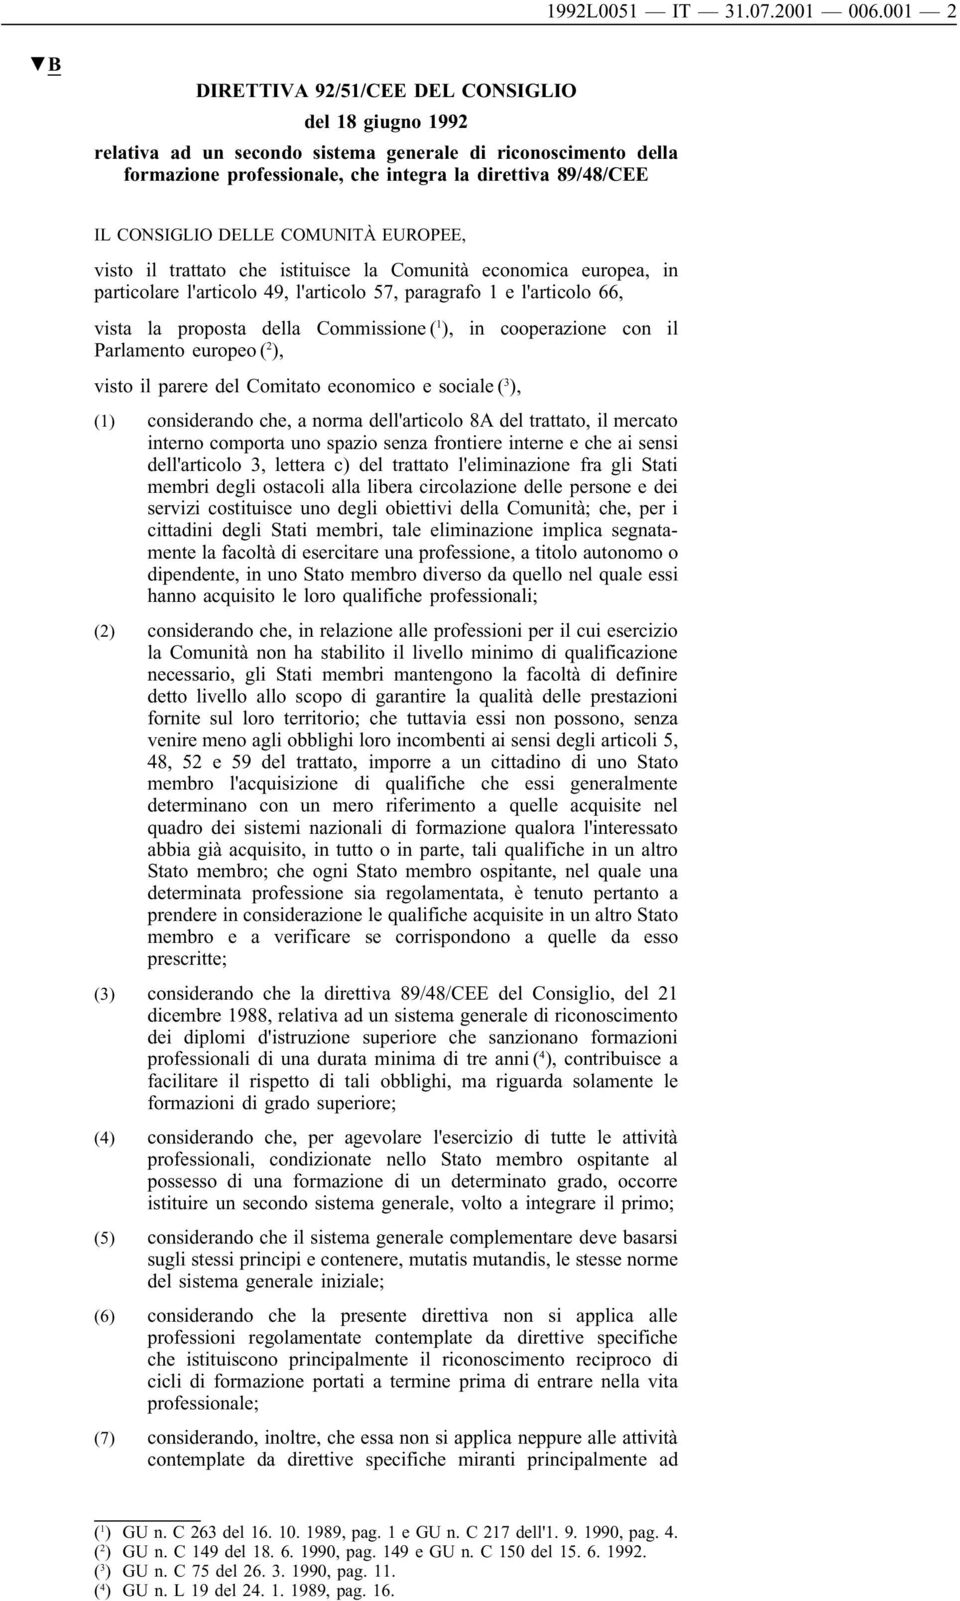 DELLE COMUNITÀ EUROPEE, visto il trattato che istituisce la Comunità economica europea, in particolare l'articolo 49, l'articolo 57, paragrafo 1 e l'articolo 66, vista la proposta della Commissione (